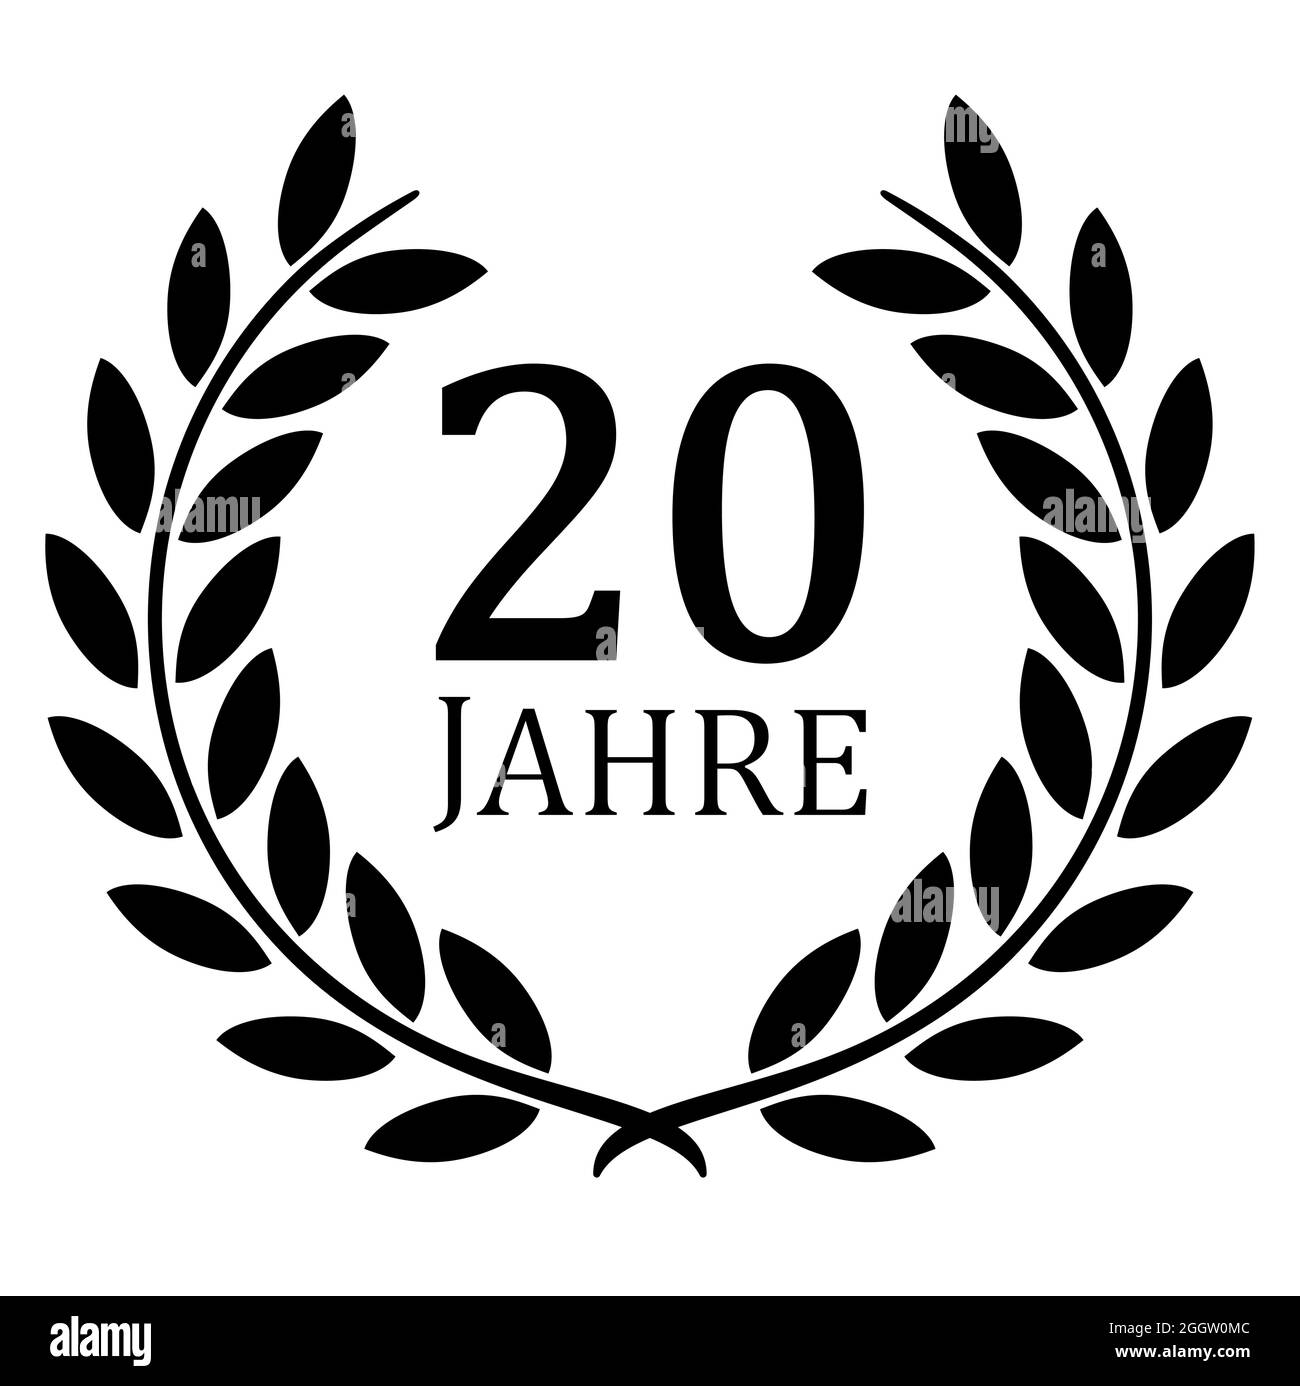 fichier vectoriel eps avec couronne de laurier noire sur fond blanc pour succès ou jubilé ferme avec texte 20 ans (texte allemand) Illustration de Vecteur